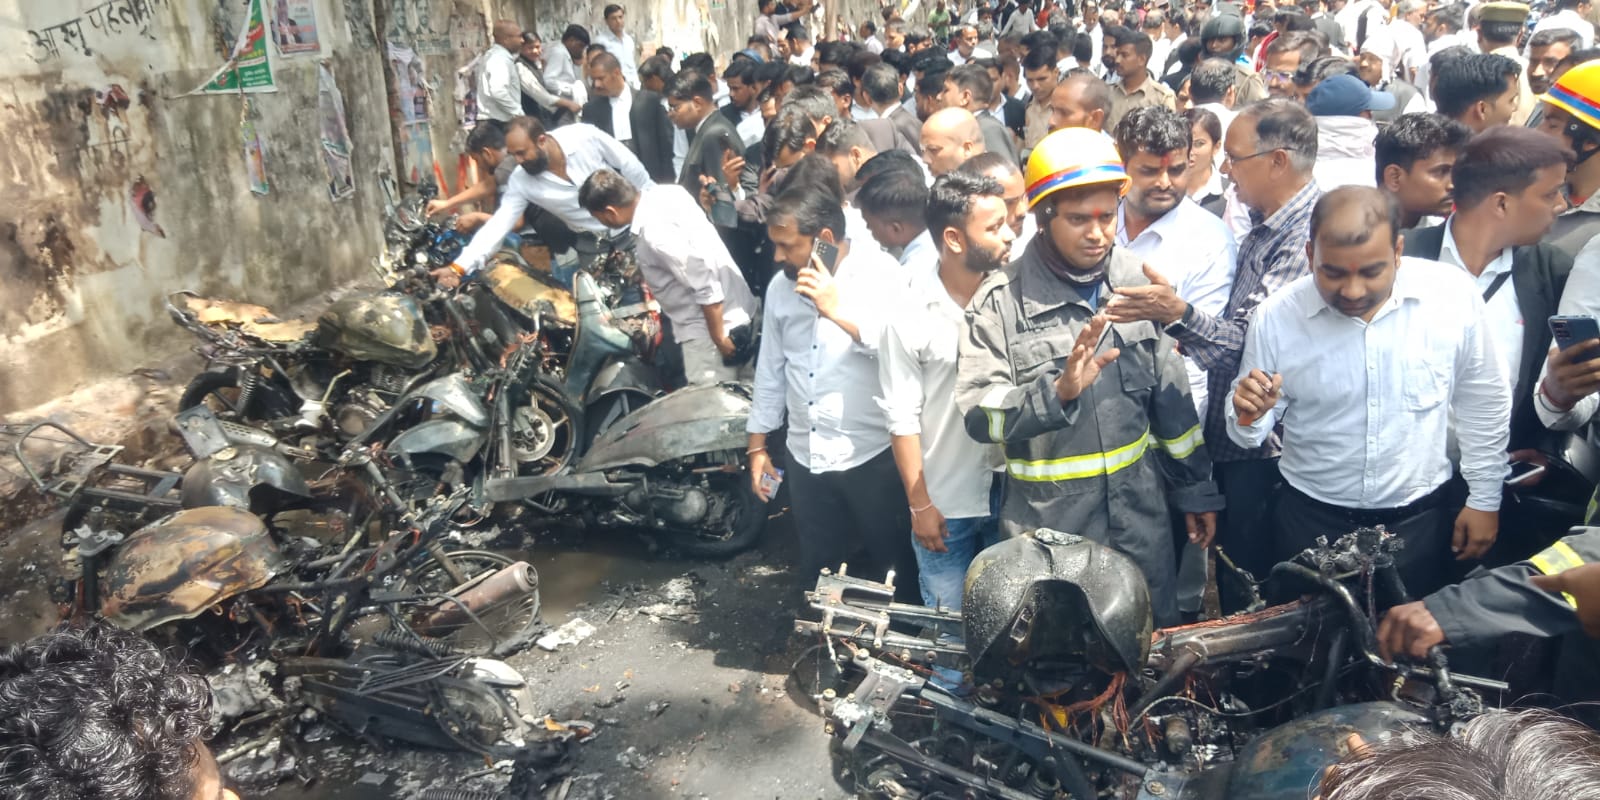 लखनऊ सिविल कोर्ट के बाहर खड़ी वकीलों की गाड़ियां जल कर राख